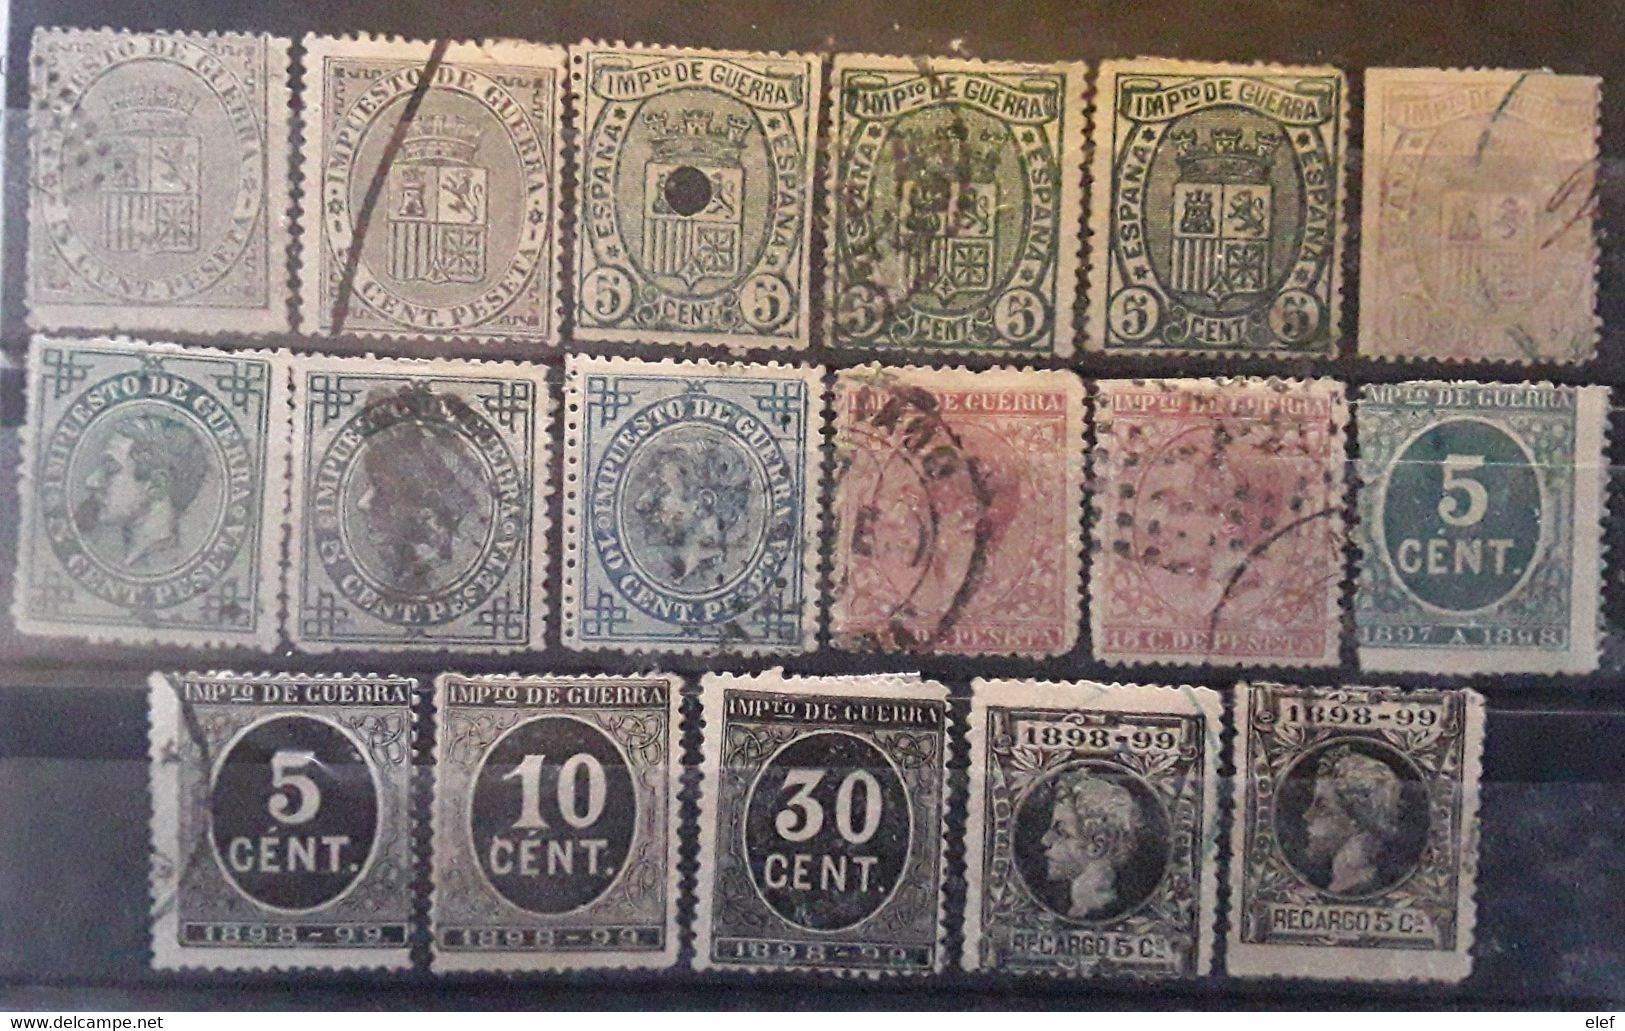 ESPANA ESPAGNE SPAIN,  Collection Impuesto De Guerra 1873 - 1898 , 17 Timbres Neufs Et Obl Entre Yvert 1 - 27, BTB - War Tax